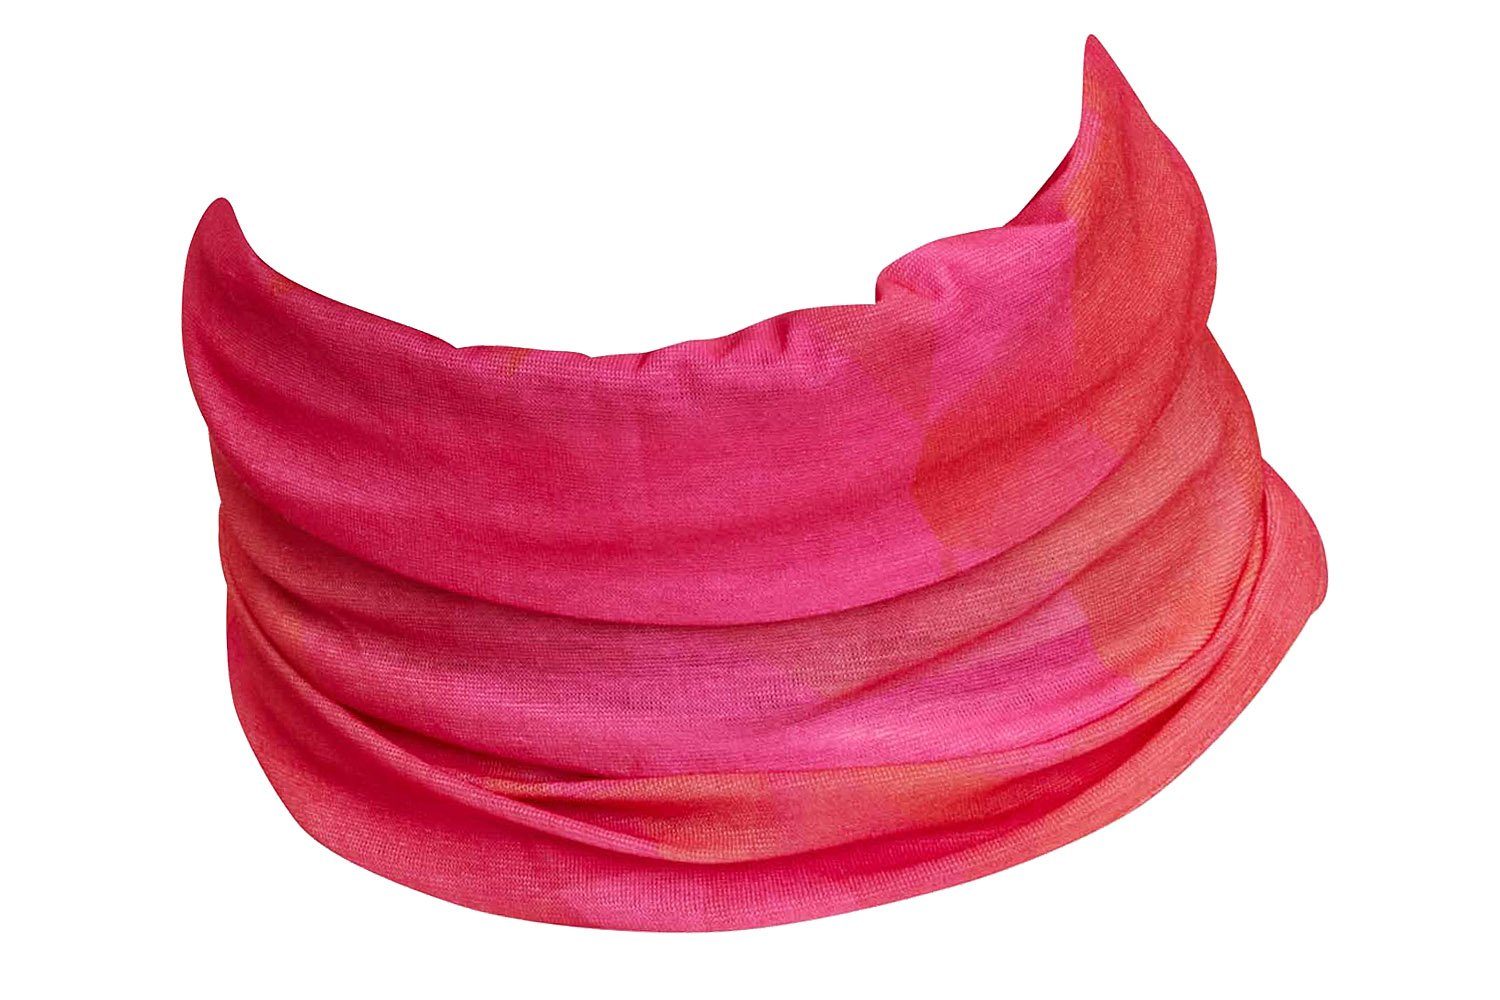 Herren Schlauchtuch, und pink-rot Halstuch, Sporttuch, Hilltop Kopftuch, Multifunktionstuch Schal, Damen